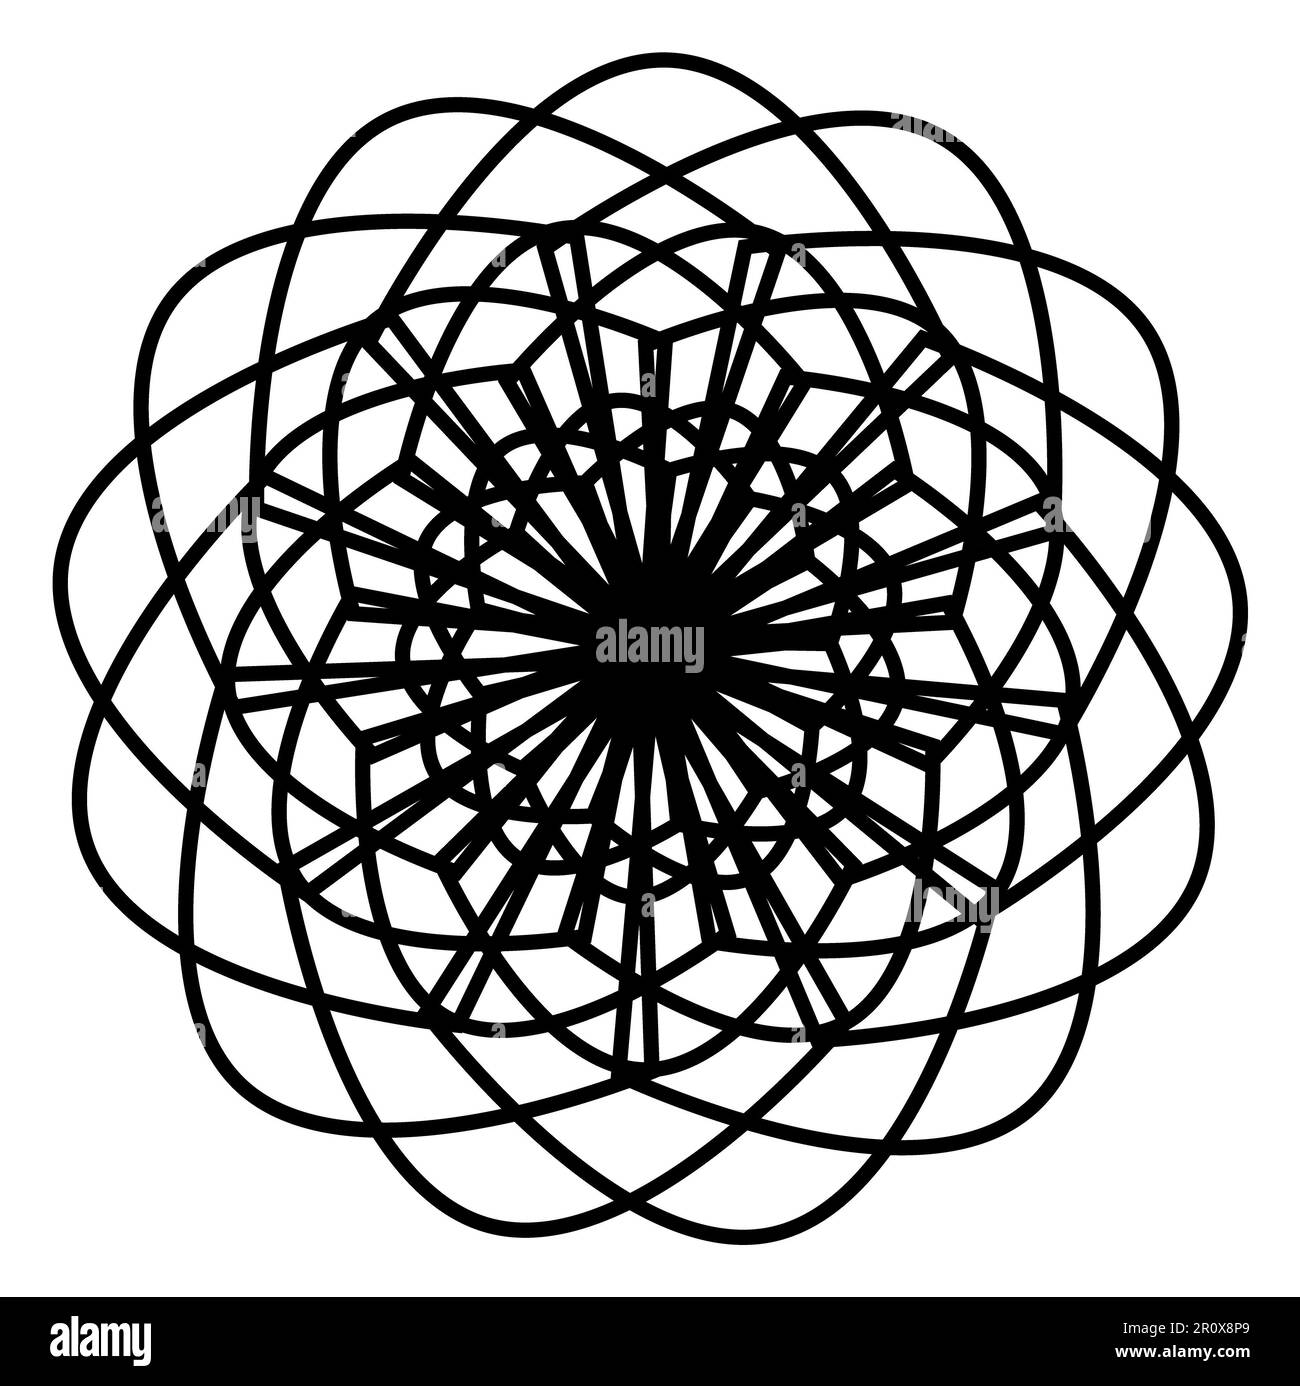 Mandala Art Design Vector Illustration: Mit dieser komplexen und auffälligen Vektorgrafik können Sie Ihre Designs noch weiter verbessern. Stockfoto